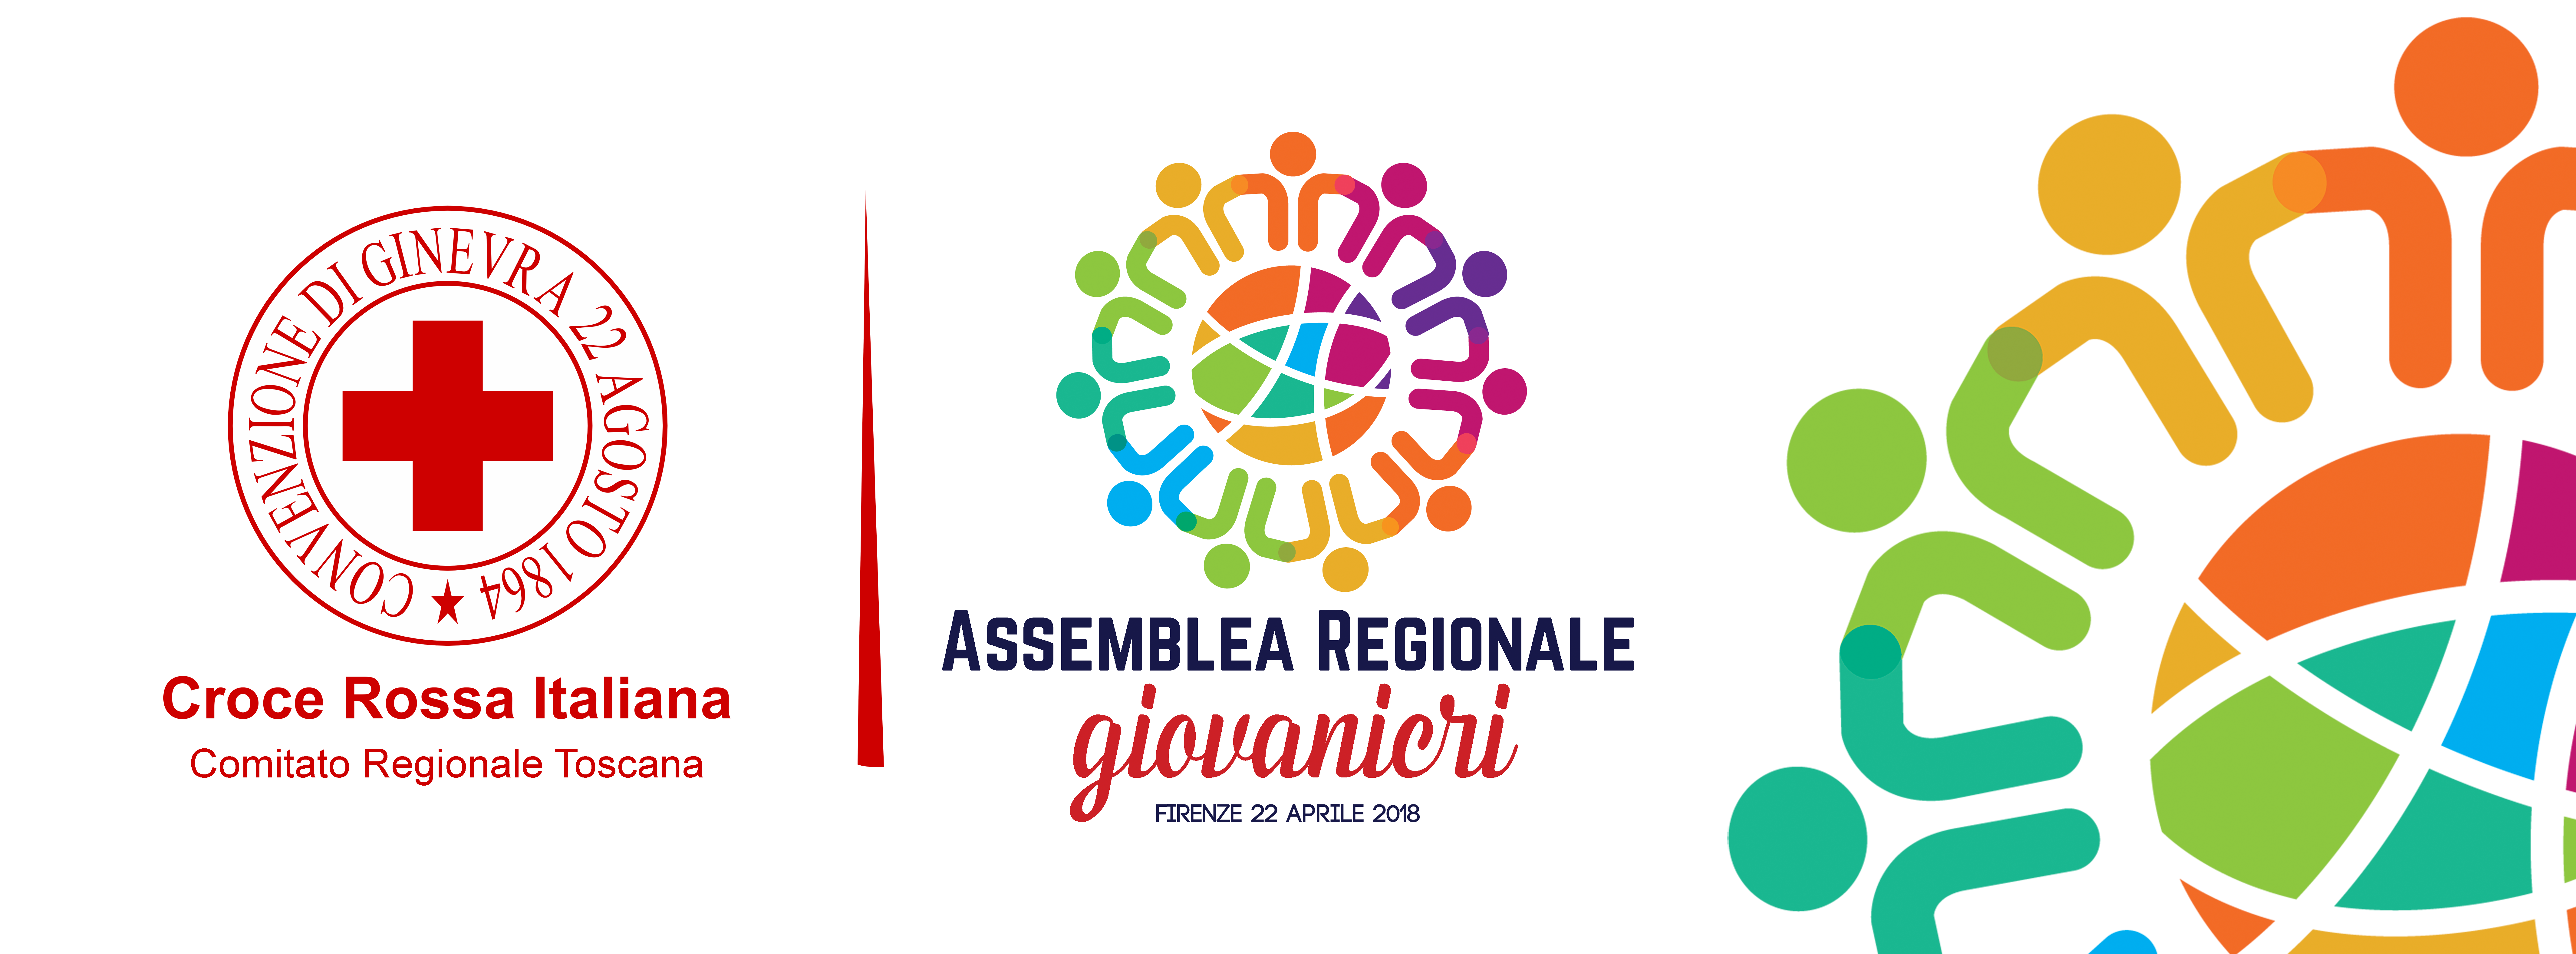 Sarà un evento aperto a tutti i giovani della Toscana, un'occasione di confronto, scambio e divertimento.